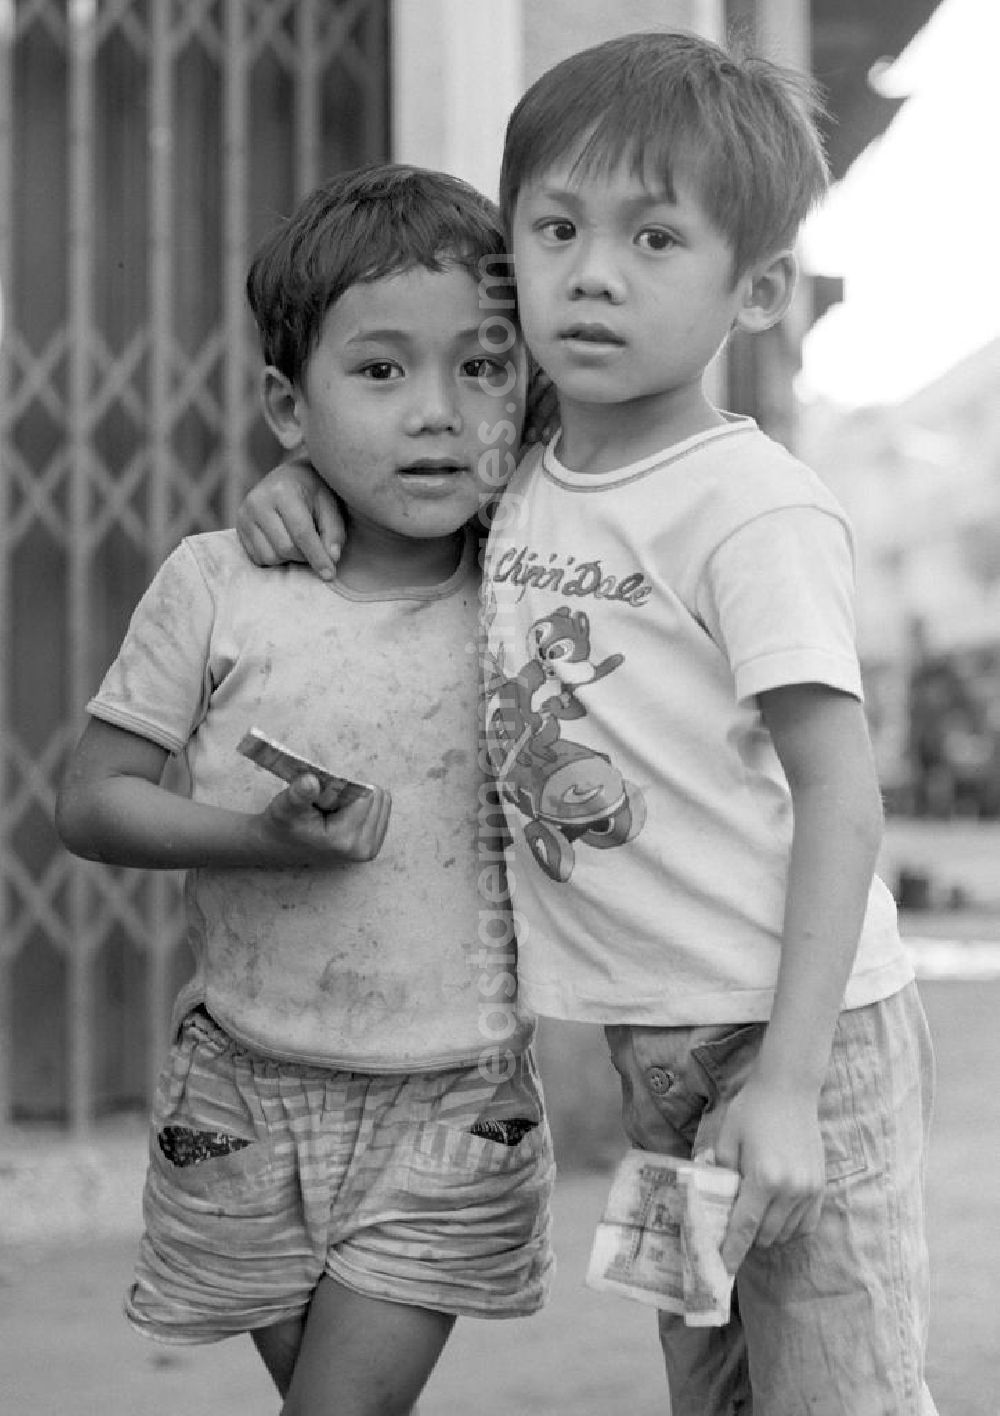 GDR photo archive: Vientiane - Zwei Kinder auf einer Straße in Vientiane, der Hauptstadt der Demokratischen Volksrepublik Laos. Ein Kind trägt ein T-Shirt mit den Chip 'n' Dale, zwei Trickfilmfiguren von Walt Disney.